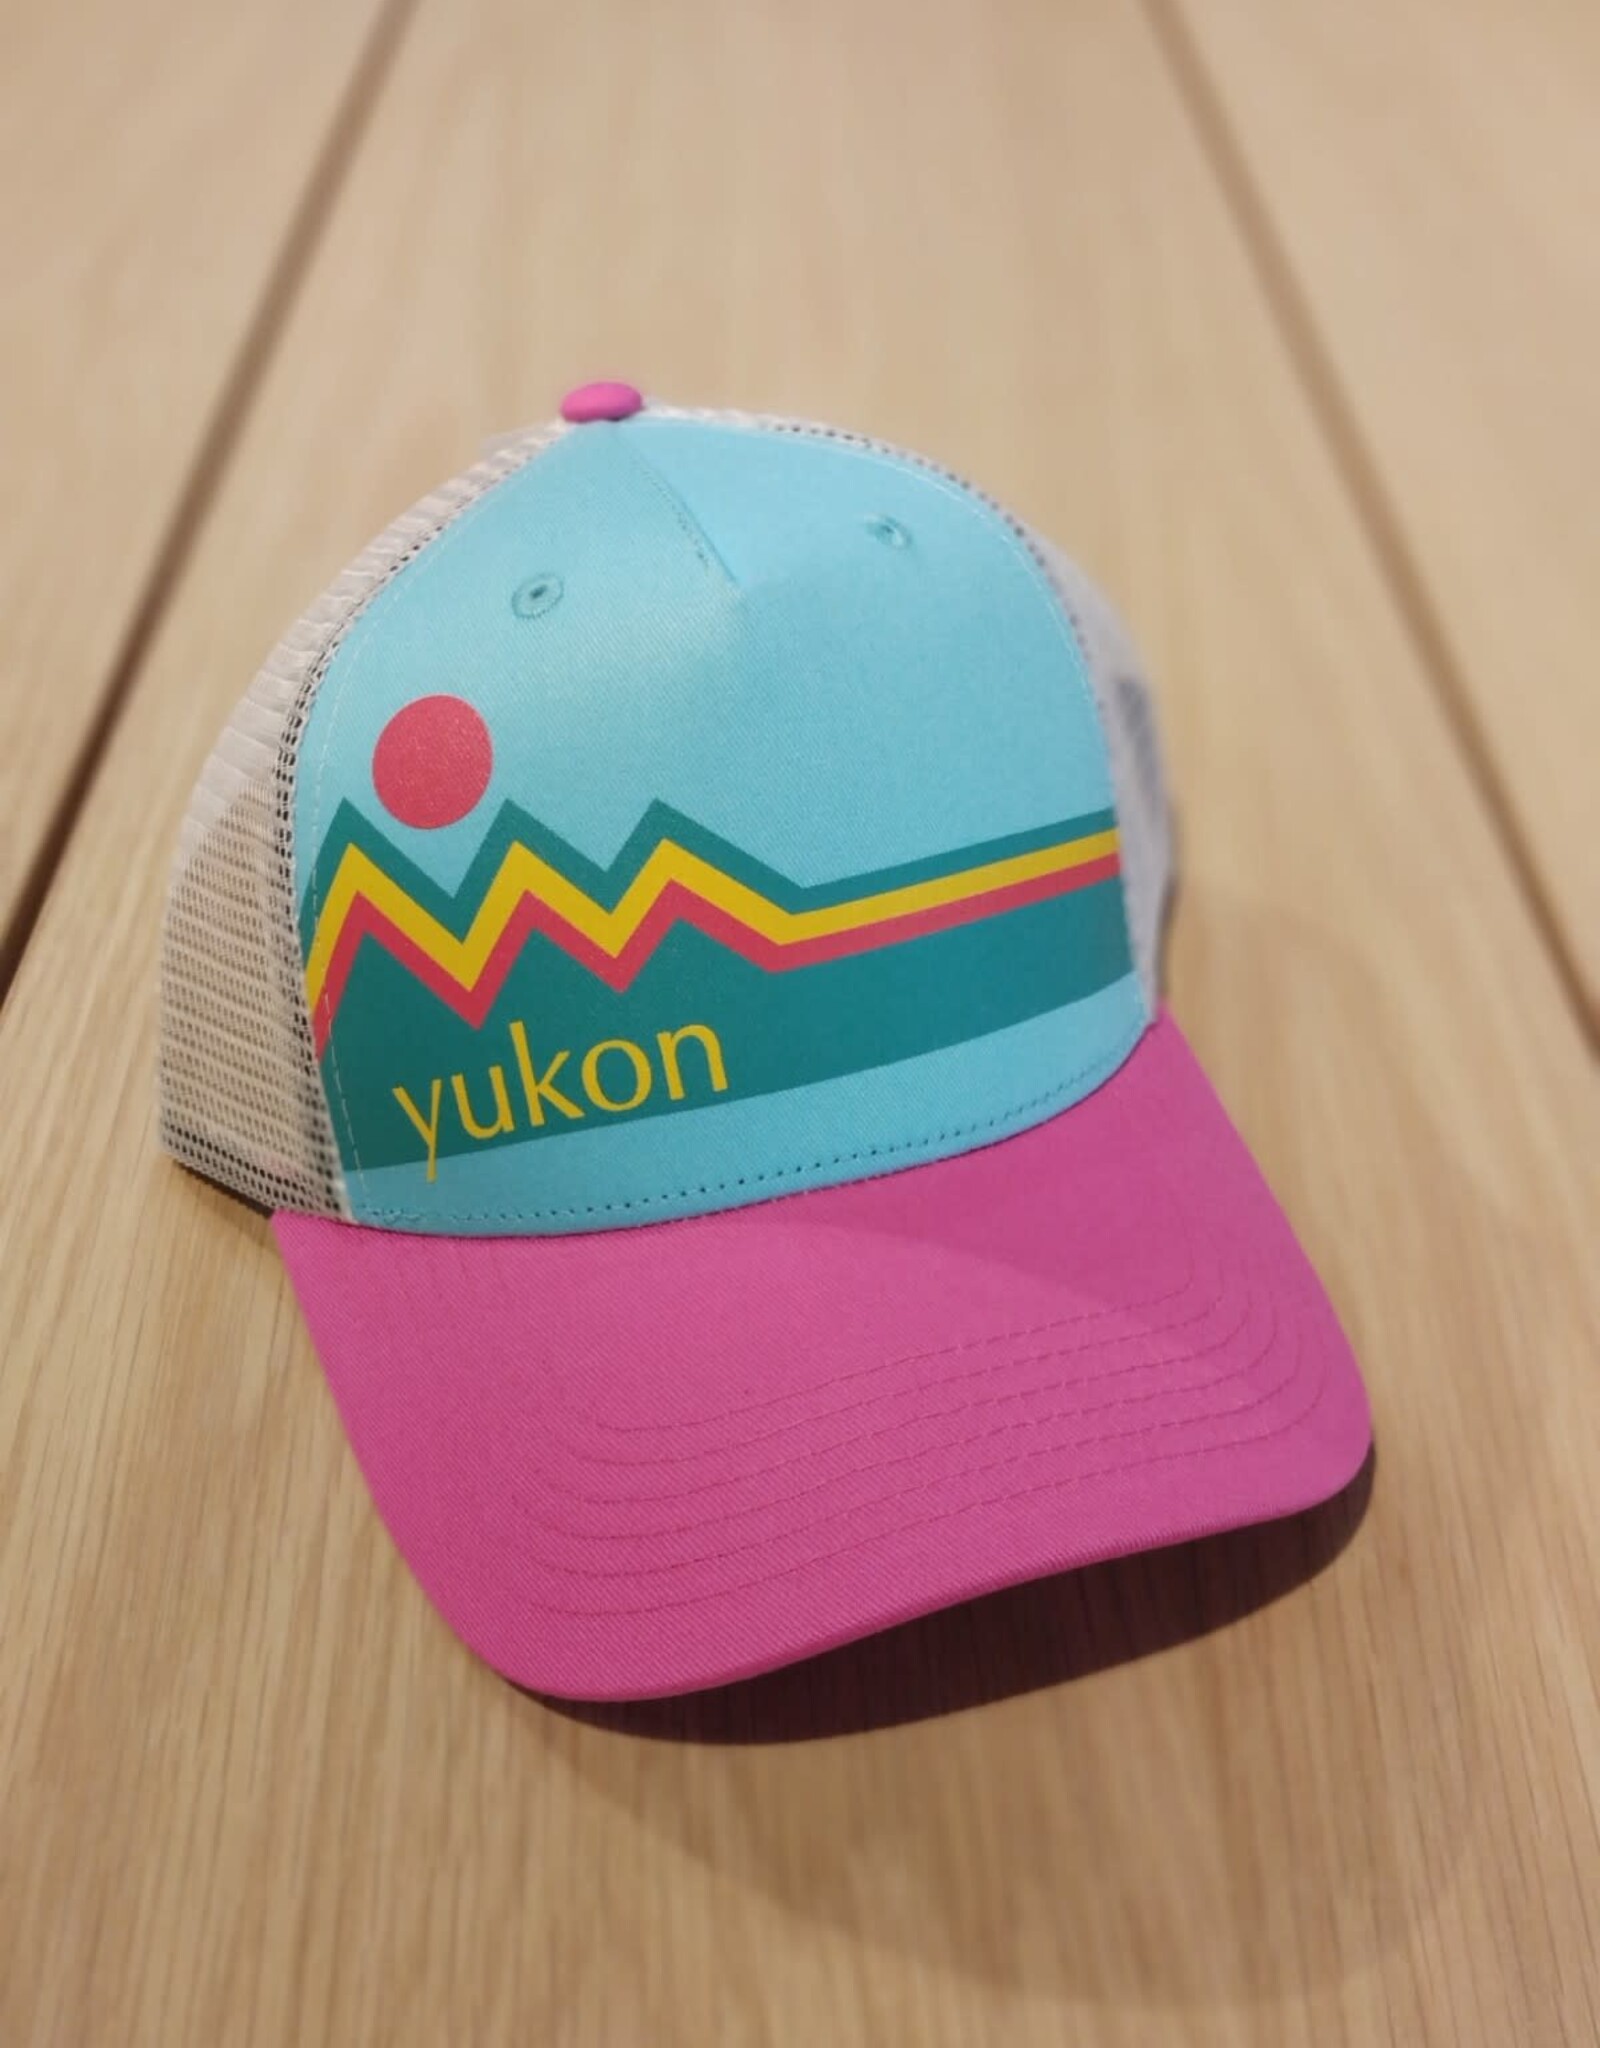 YTG - Cap - Yukon Midnight Sun - Small/Youth